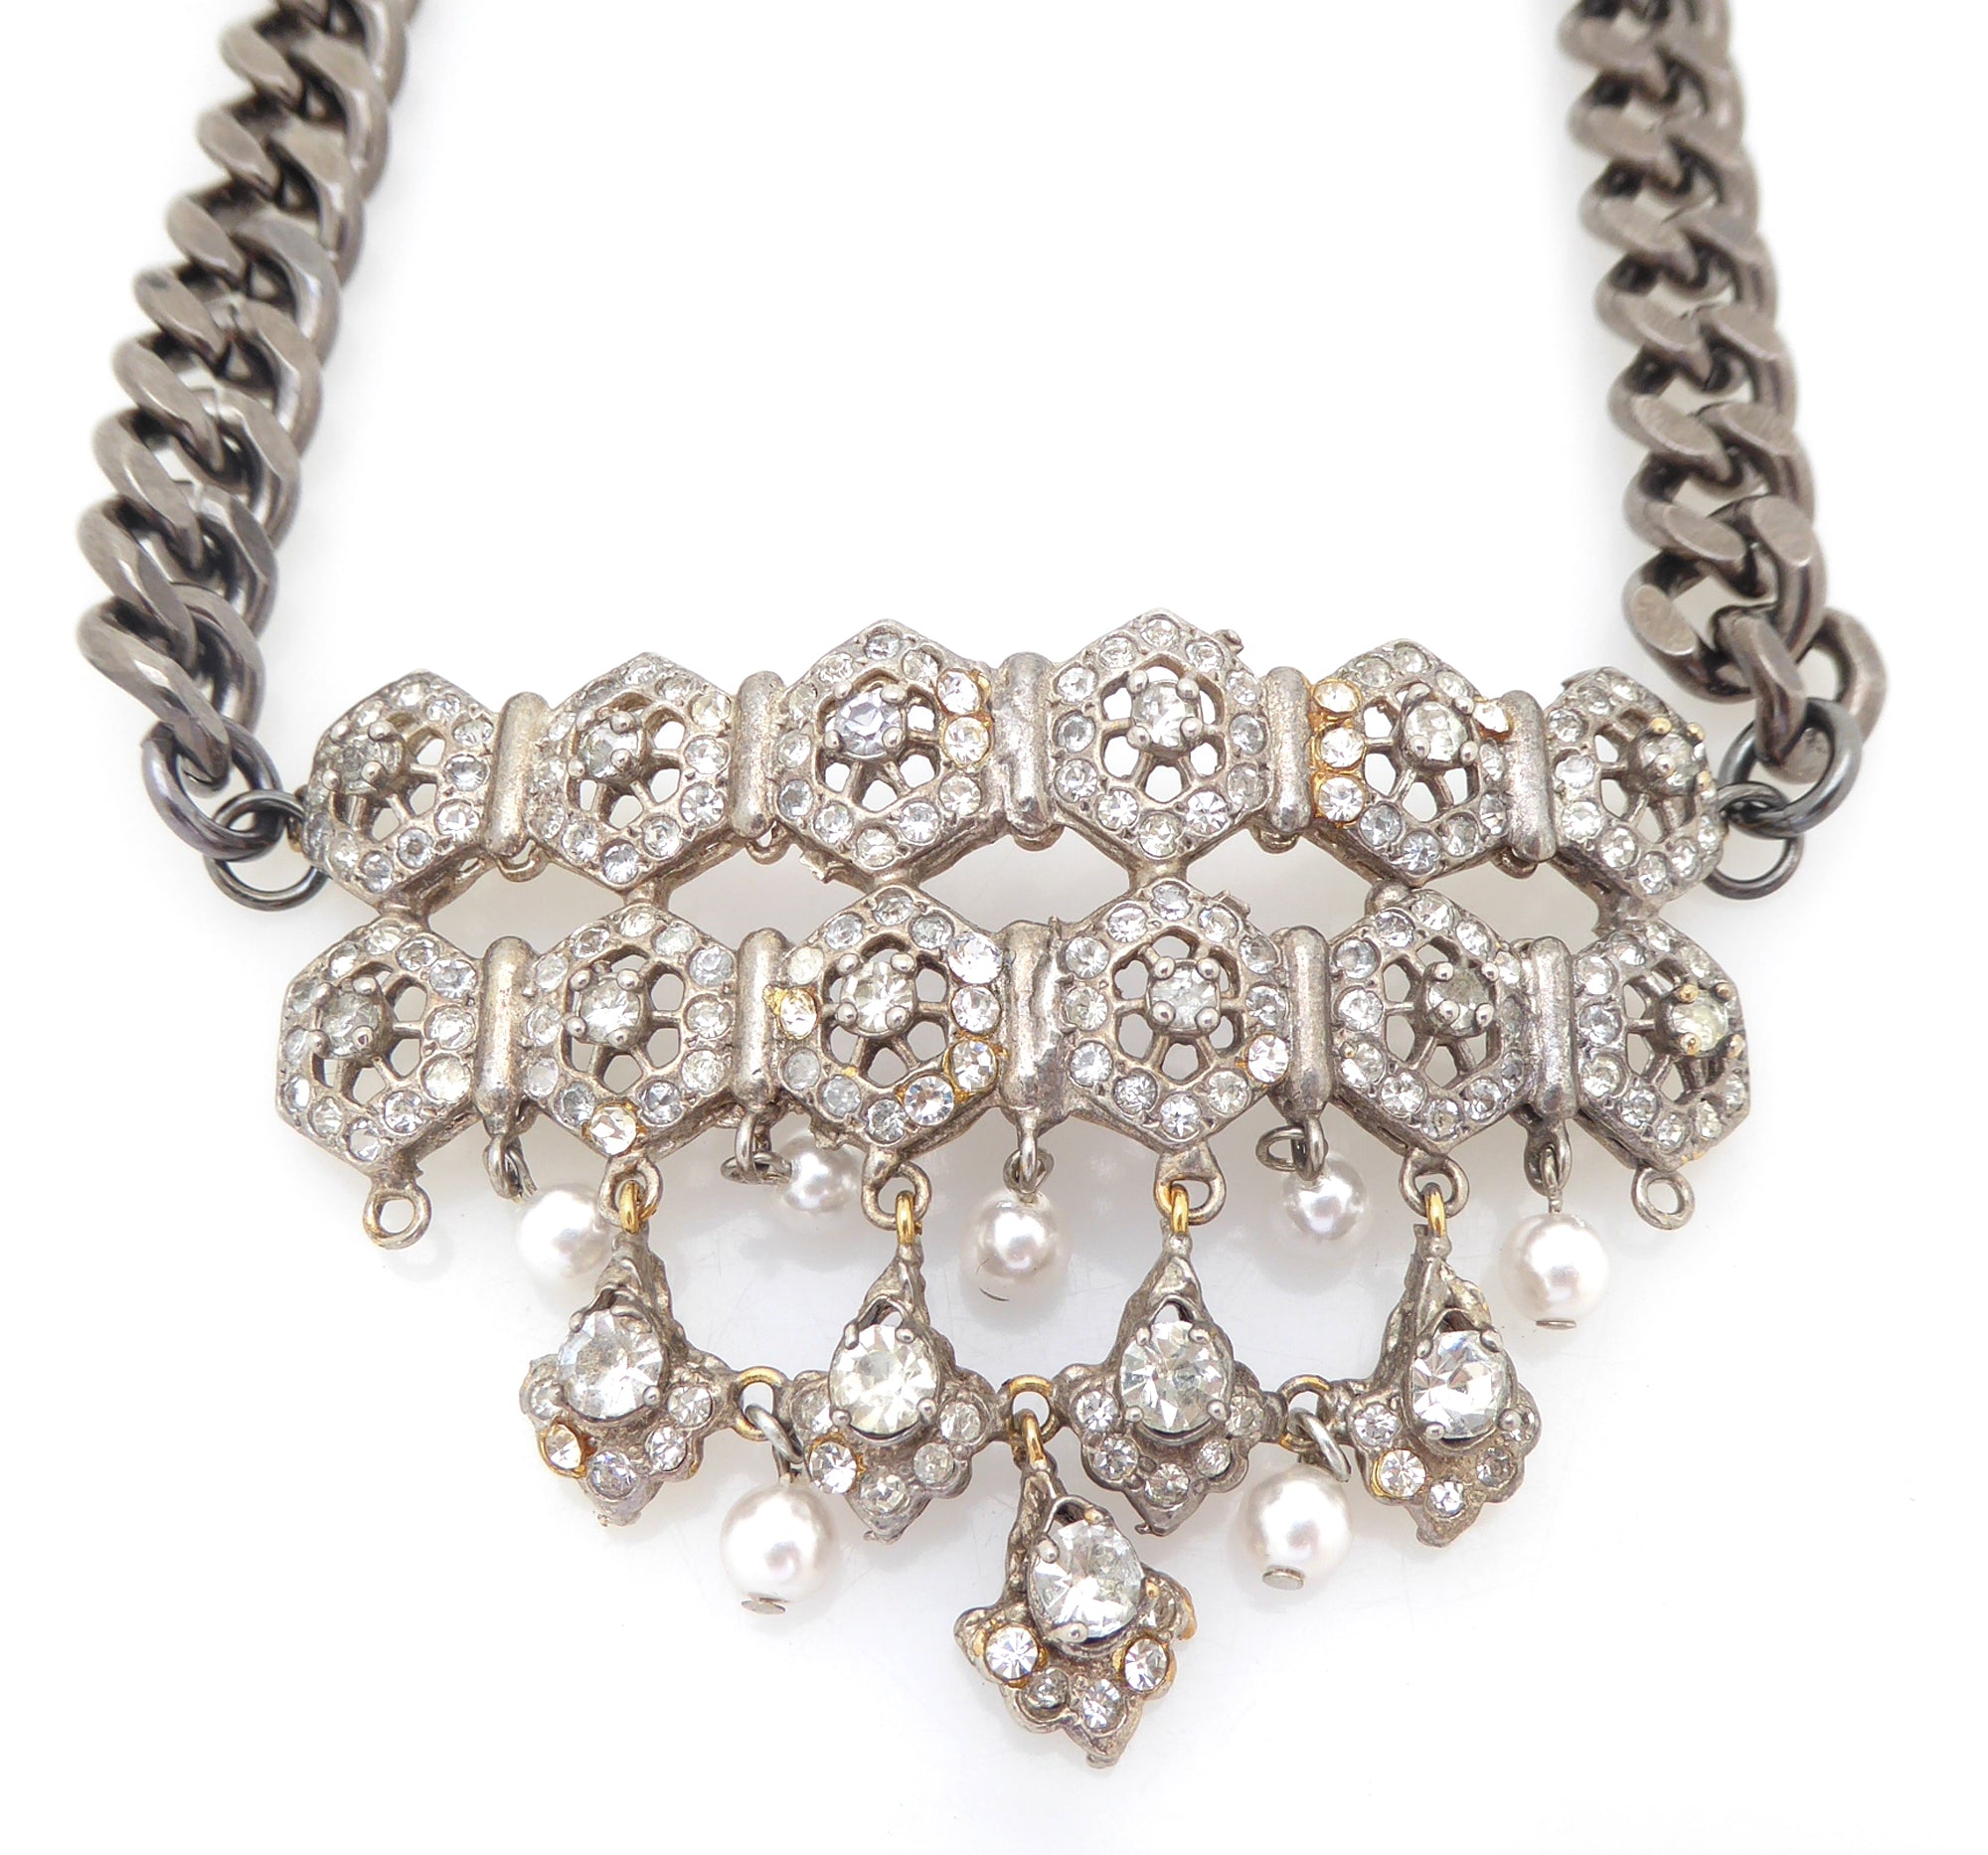 Tiretiera rhinestone pearl gunmetal necklace by Jenny Dayco 4